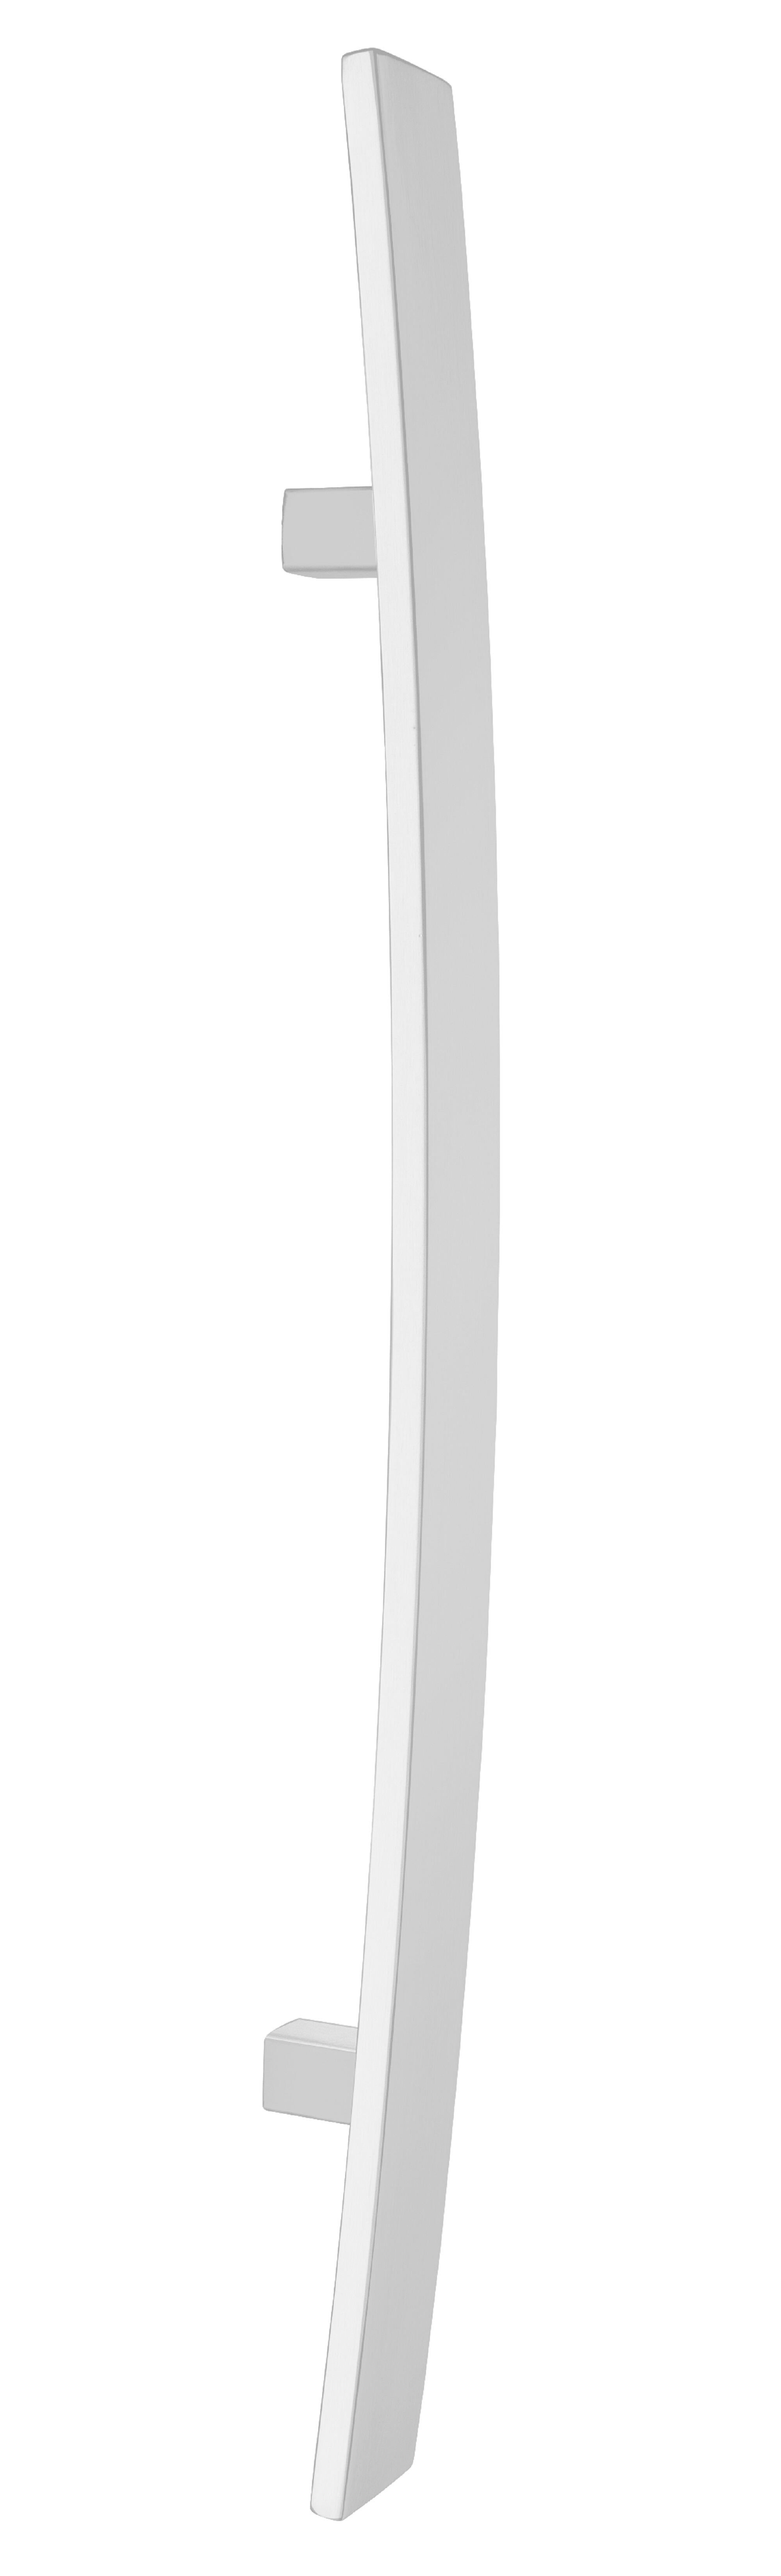 Manillón curvo inox 600mm epoxi blanco